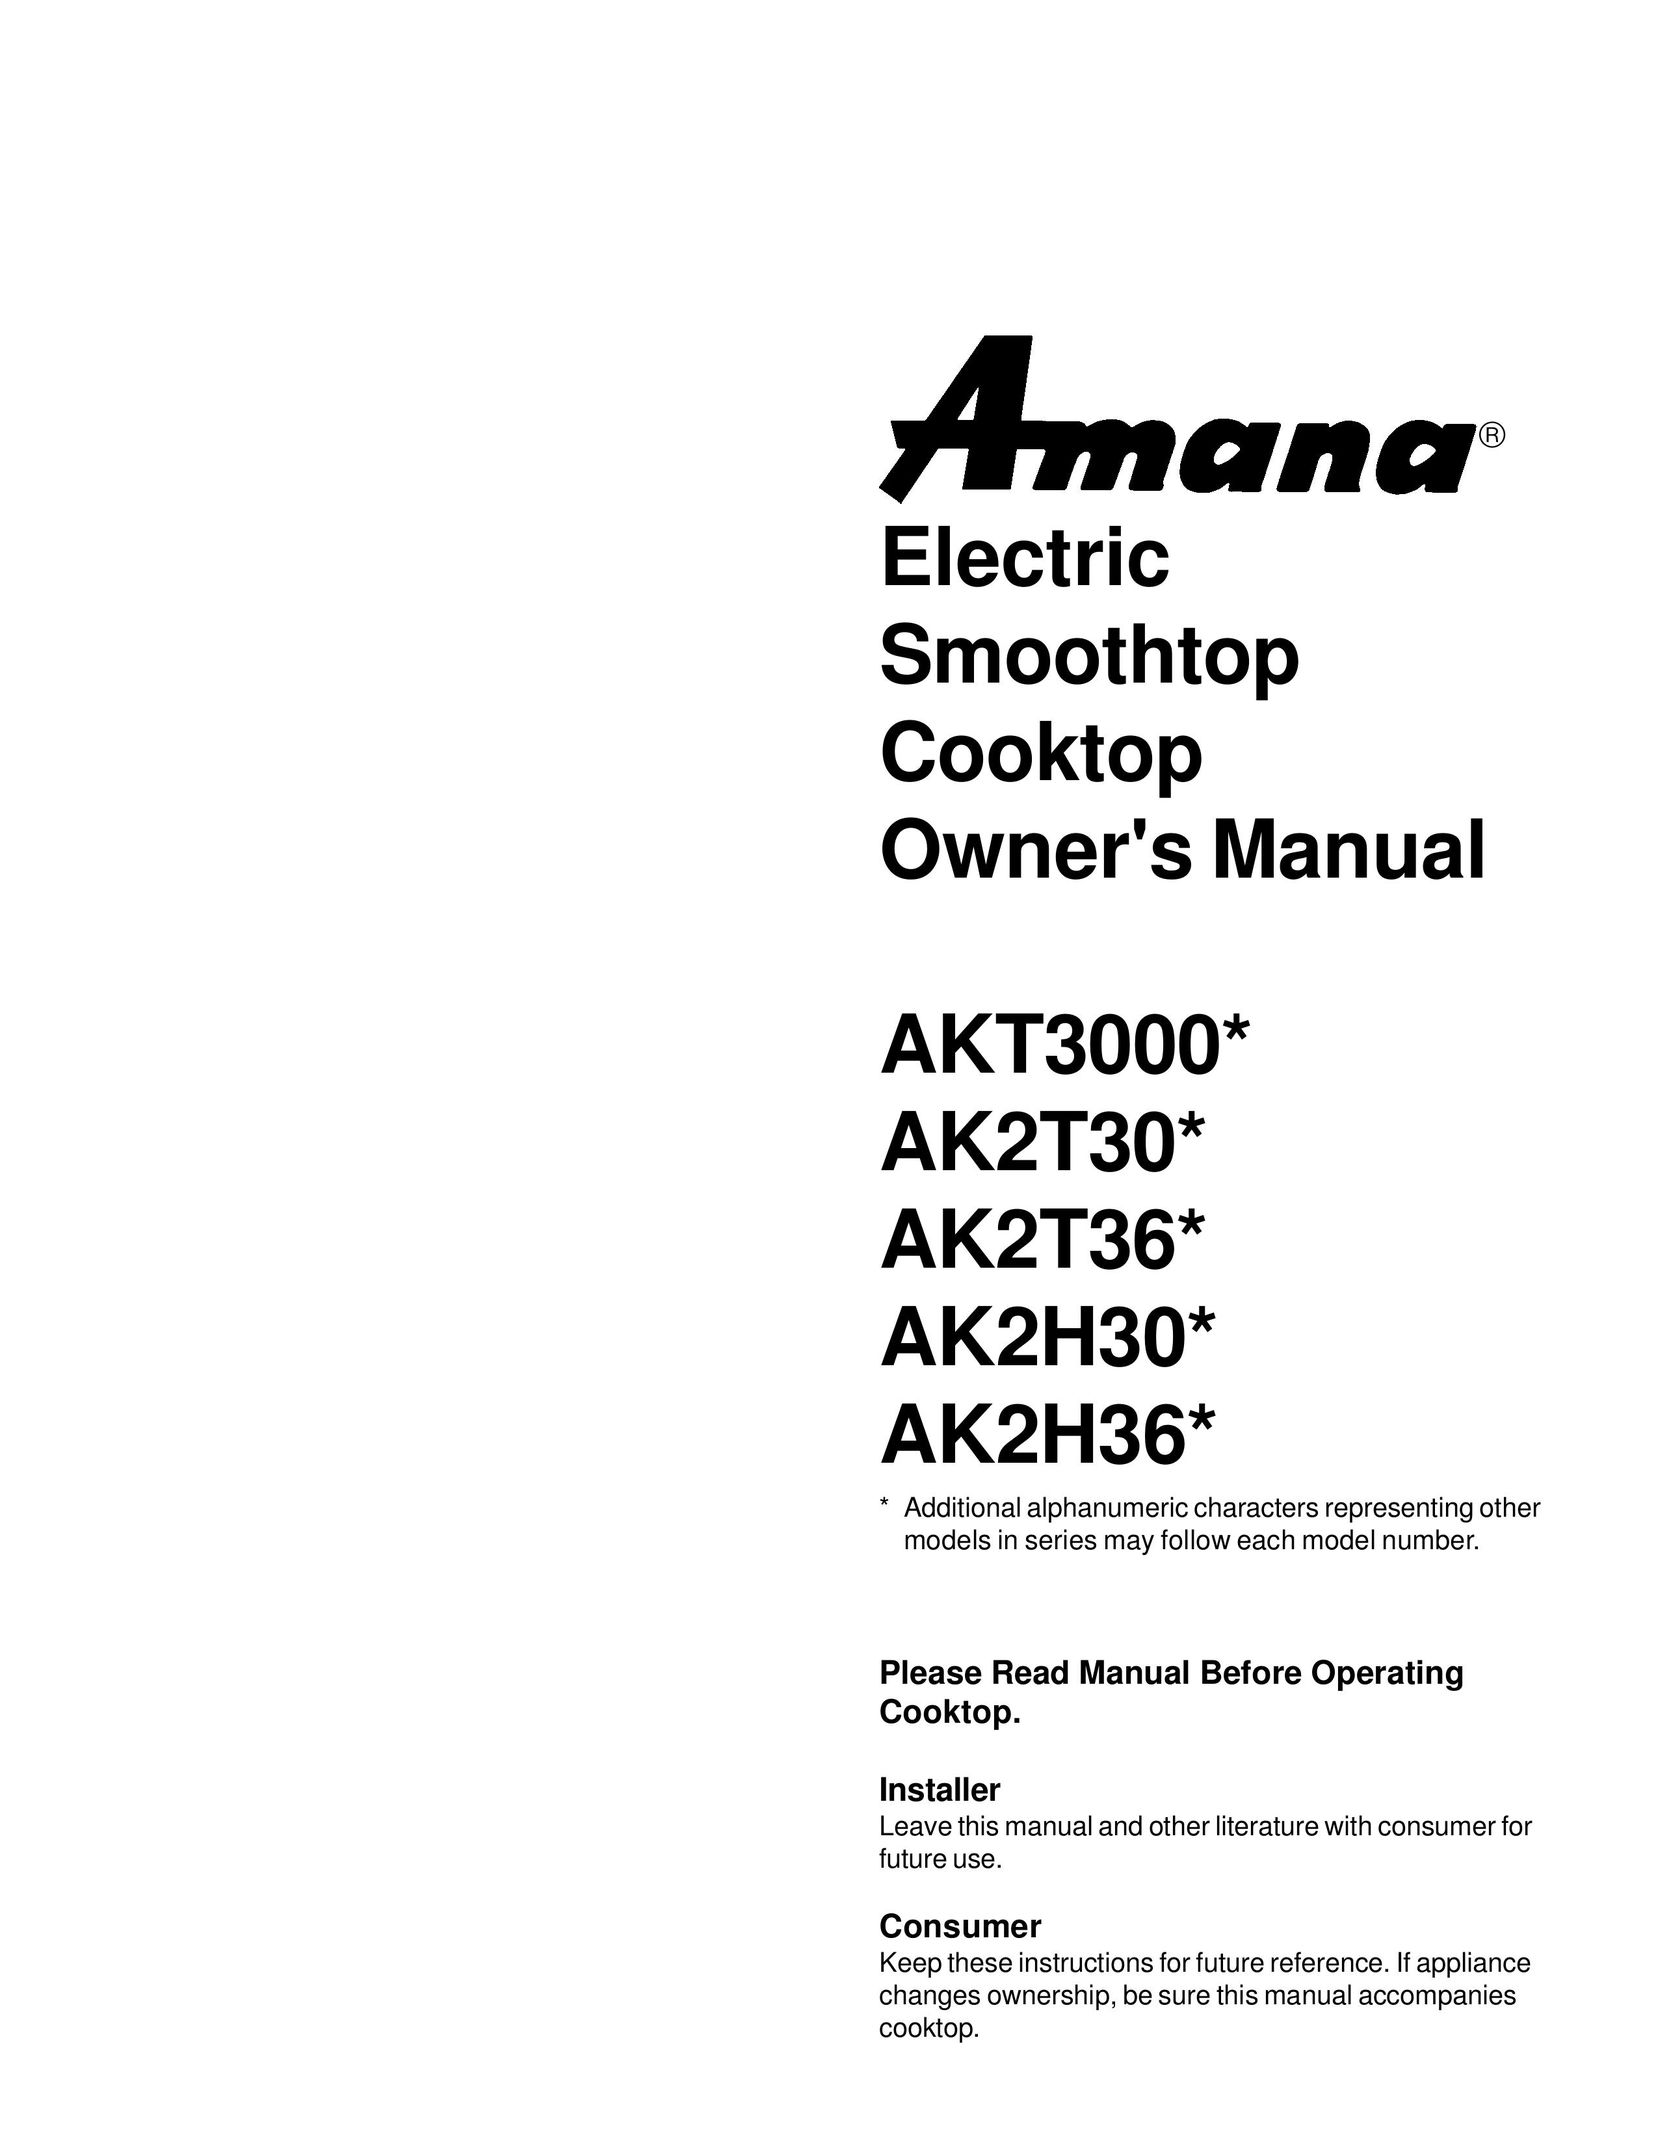 Amana AK2T36* Cooktop User Manual